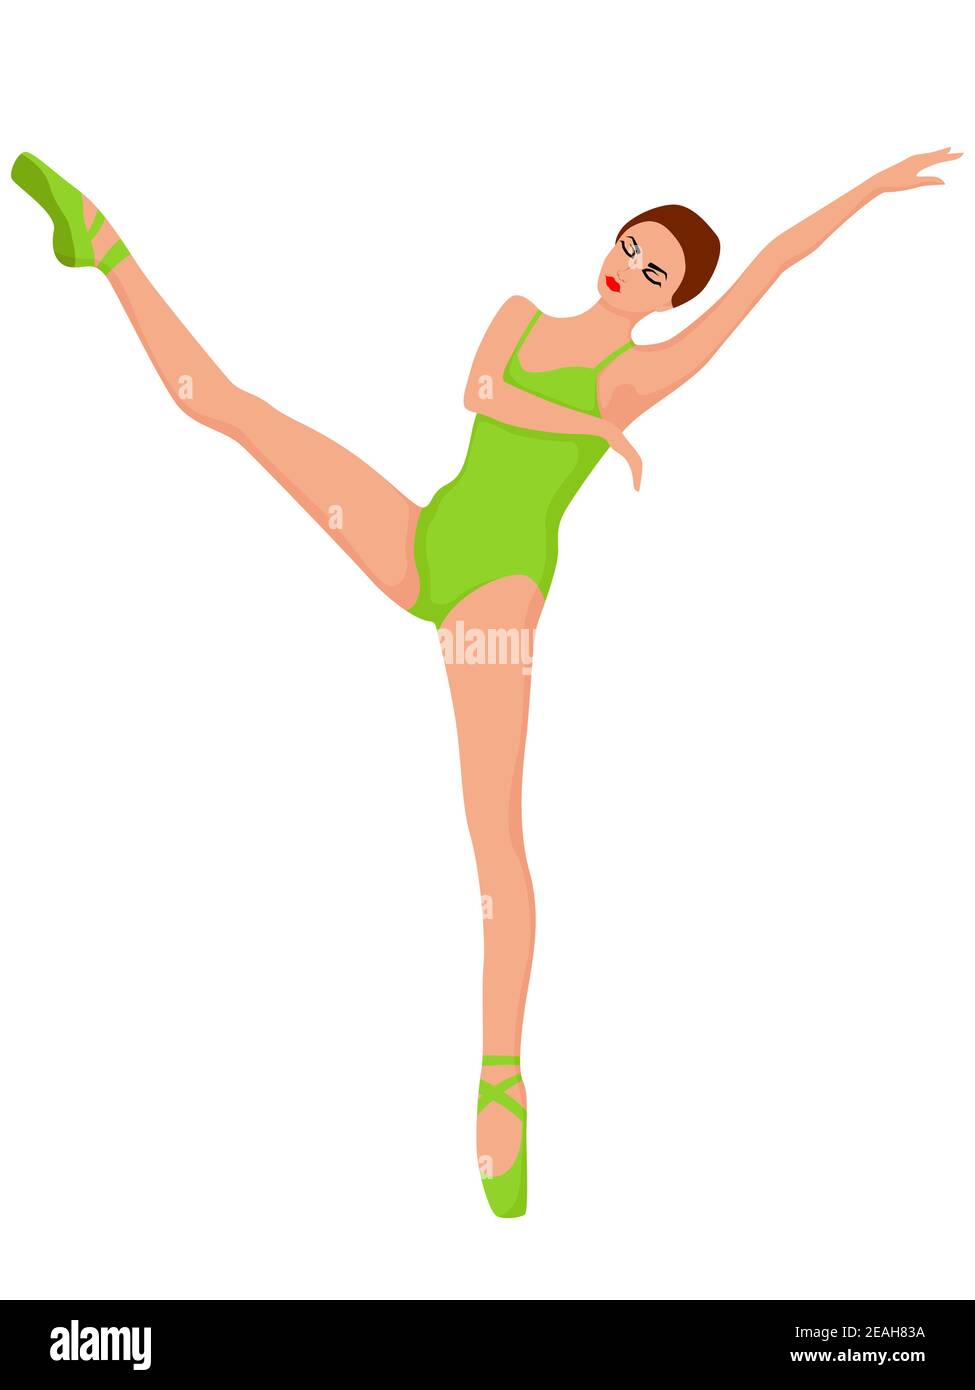 Ballerine élégante en léopard vert doux, vecteur de dessin à la main, isolée sur fond blanc Illustration de Vecteur